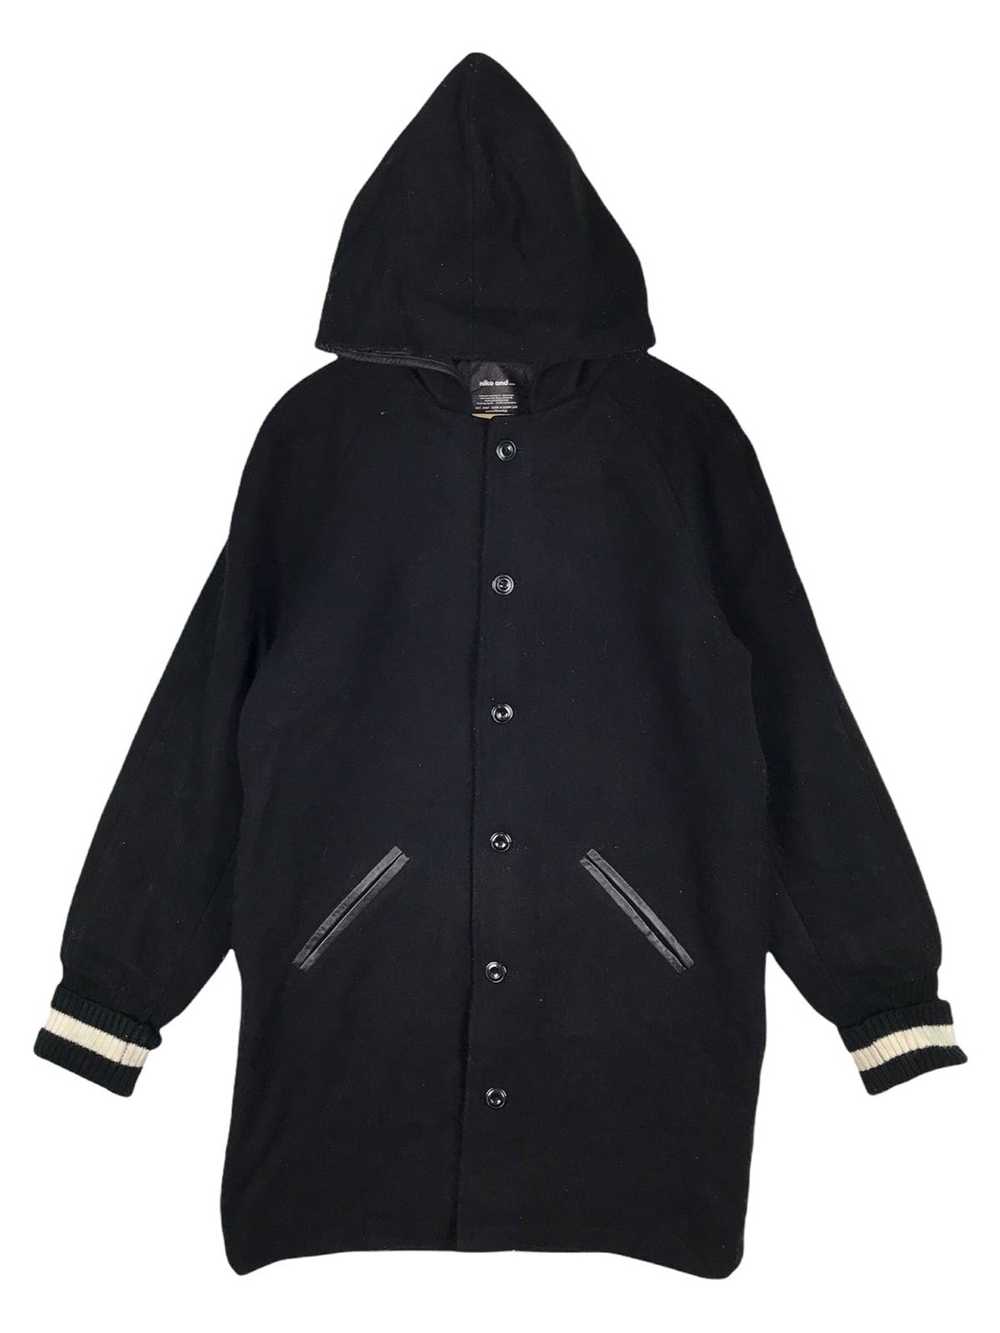 Designer × Japanese Brand Niko And Wool Jacket Wi… - image 1